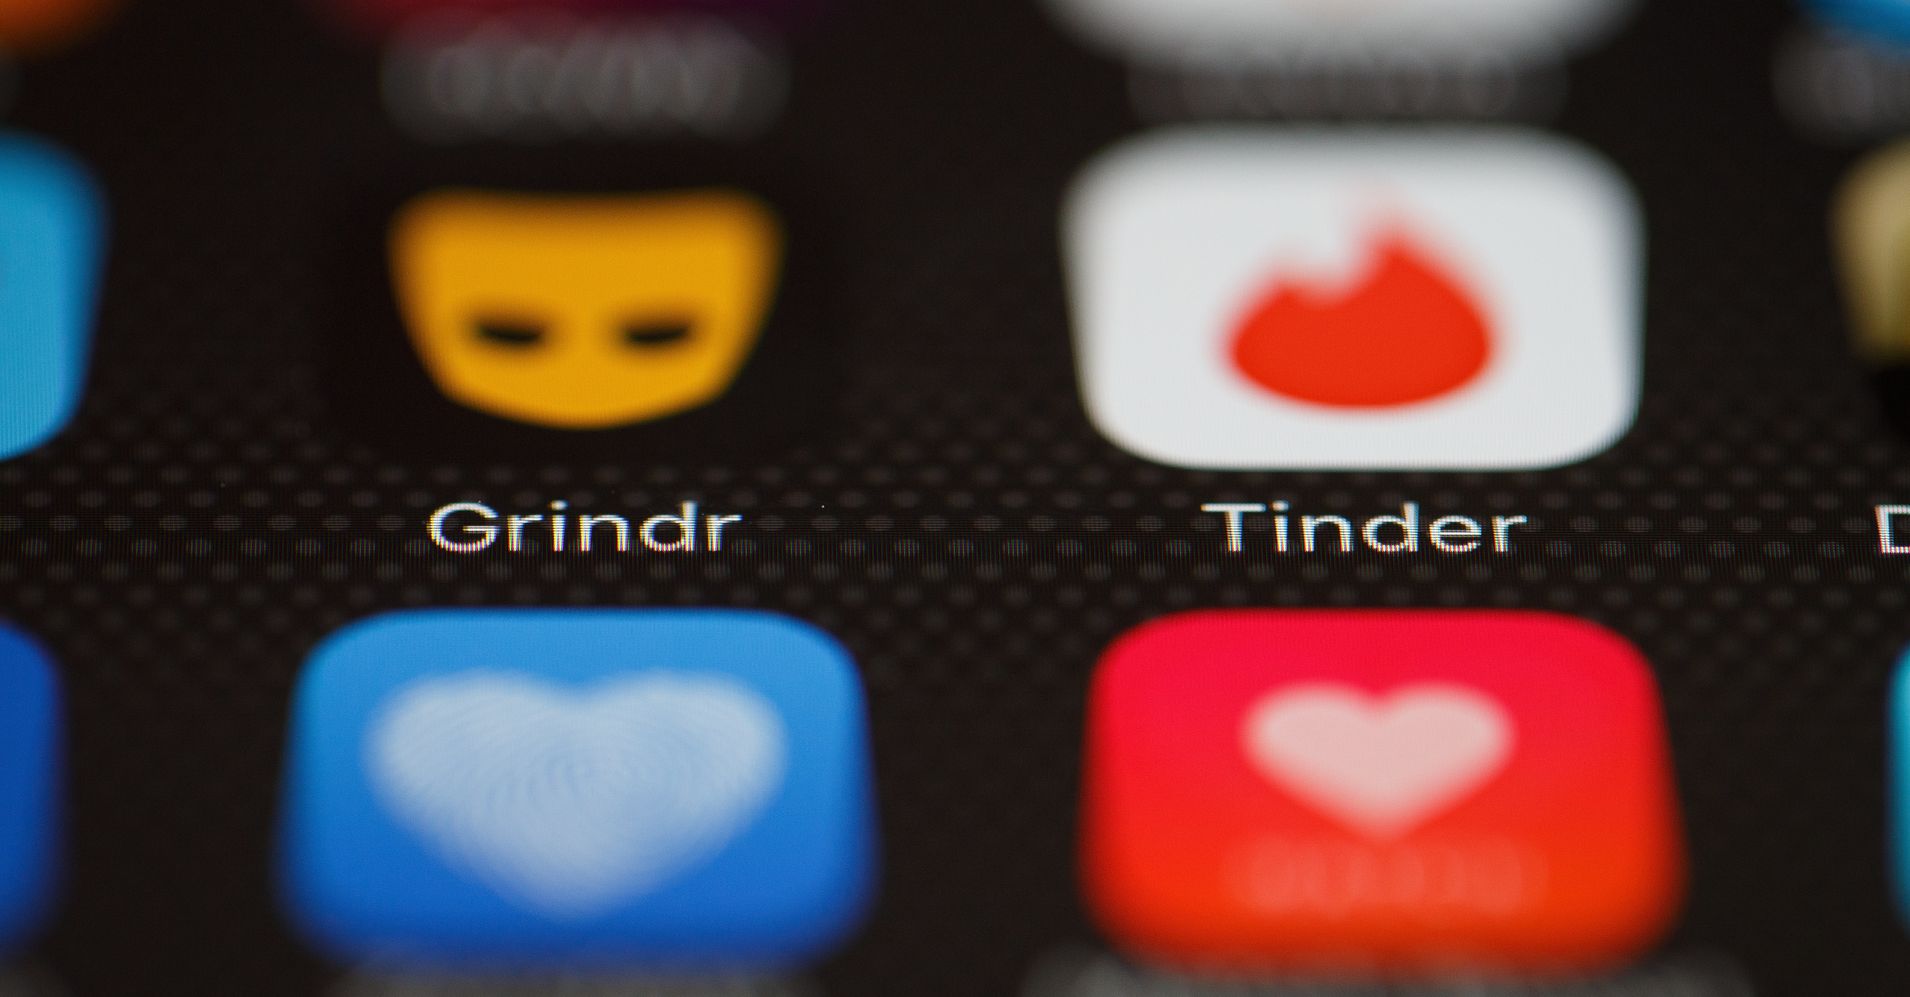 grindr app for trans